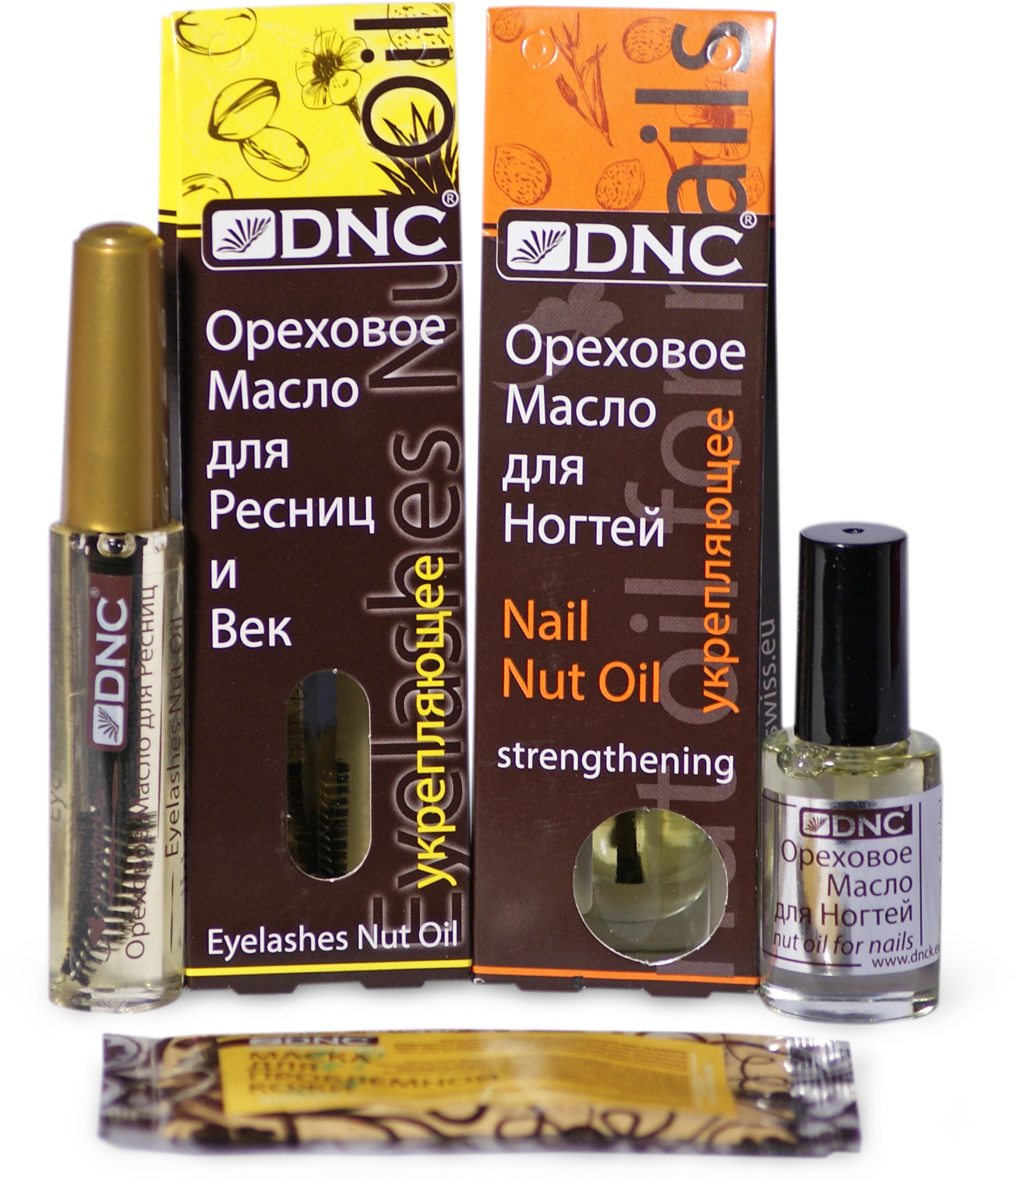 DNC Набор: Ореховое масло для ресниц укрепляющее, 12 мл; Ореховое масло для ногтей укрепляющее, 6 мл + Подарок Маска для лица, 15 мл